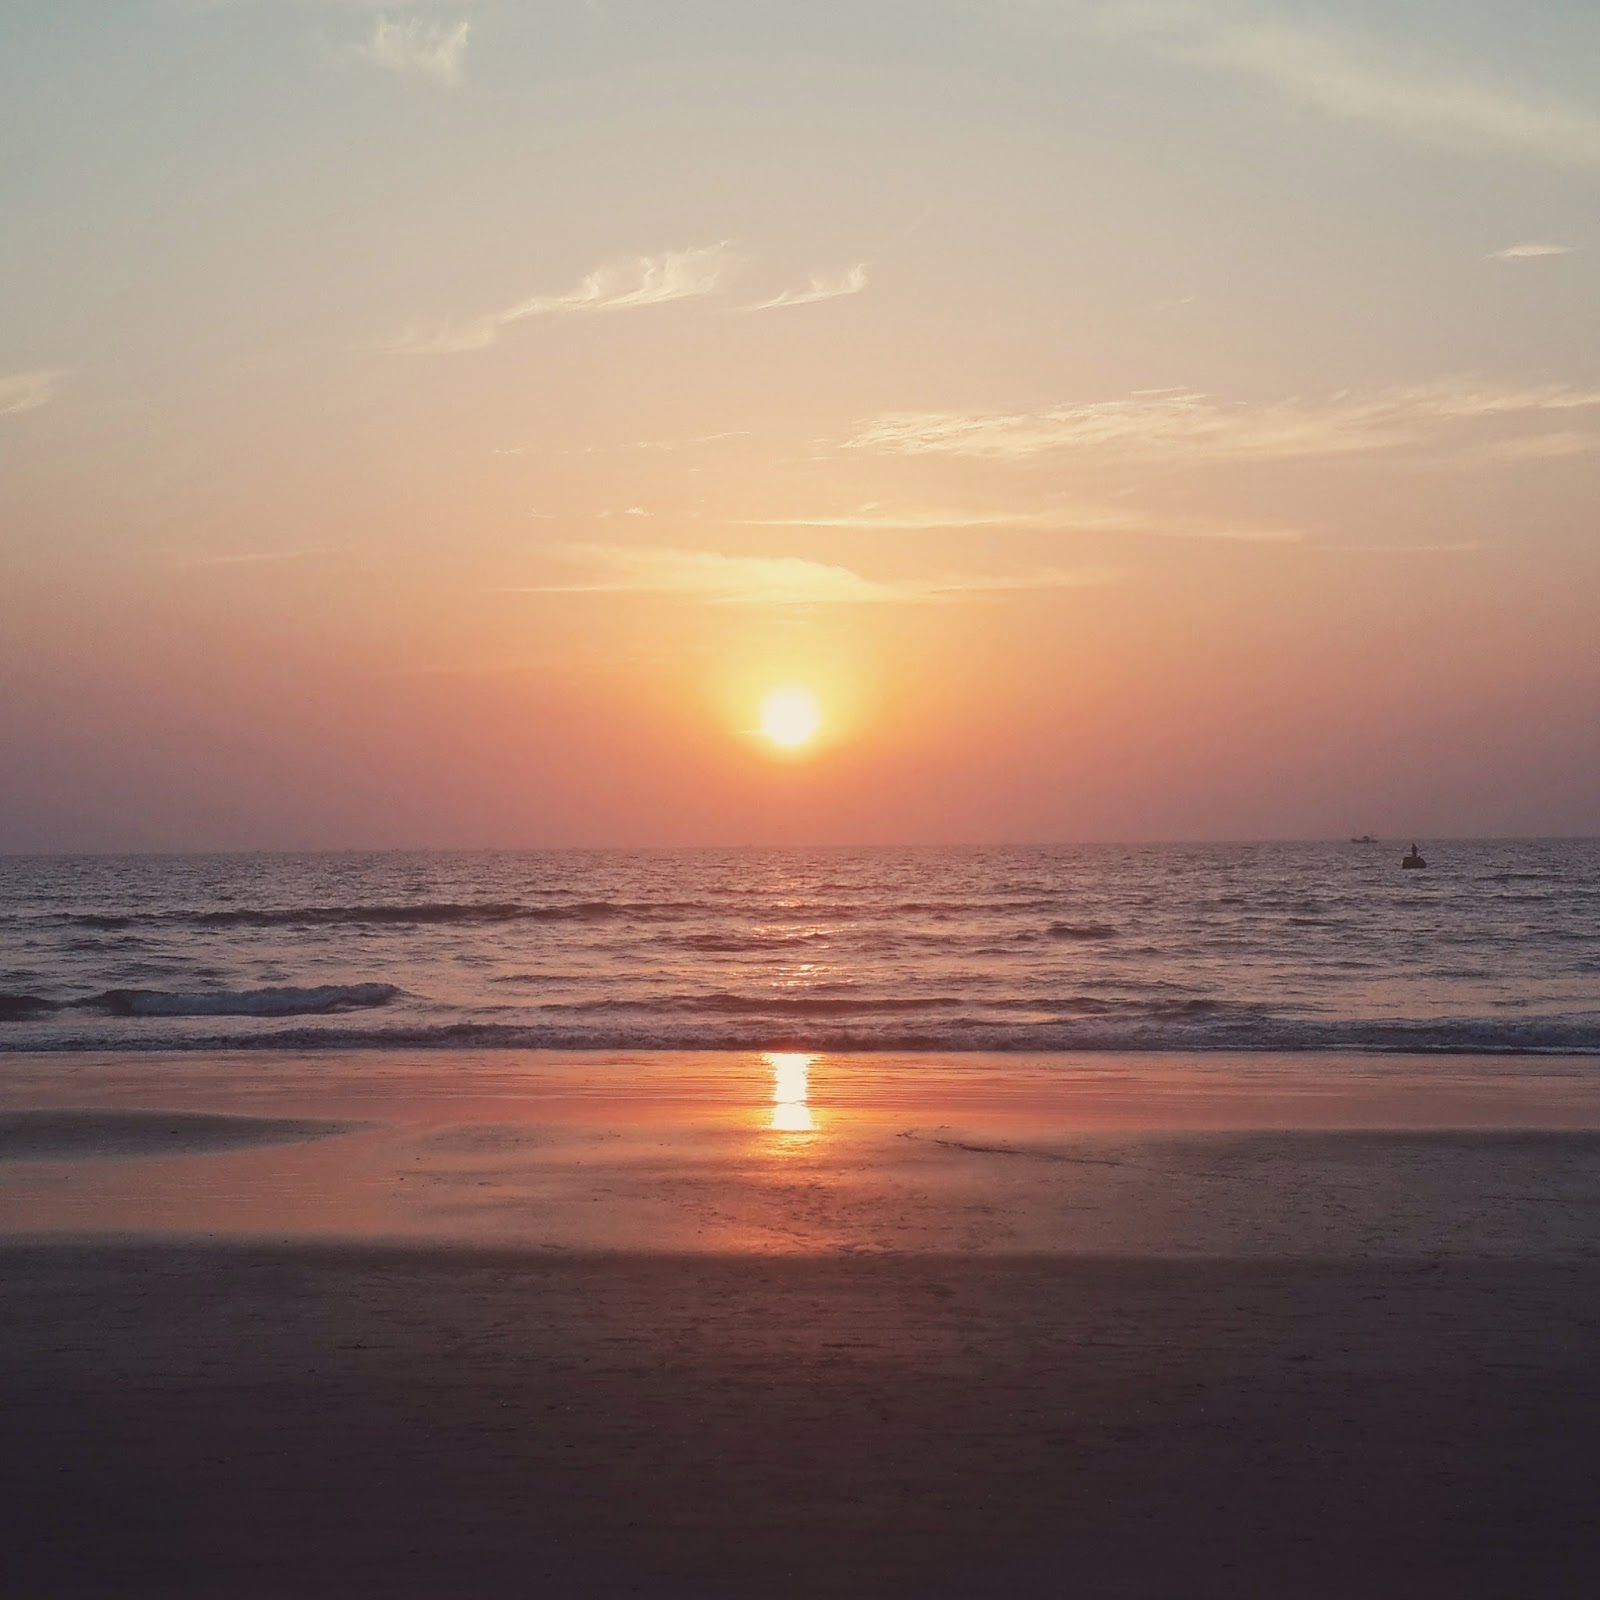 water, shore, sunset, sunrise, color, orange, purple, blue, landscape, sand, waves, photography, liquid